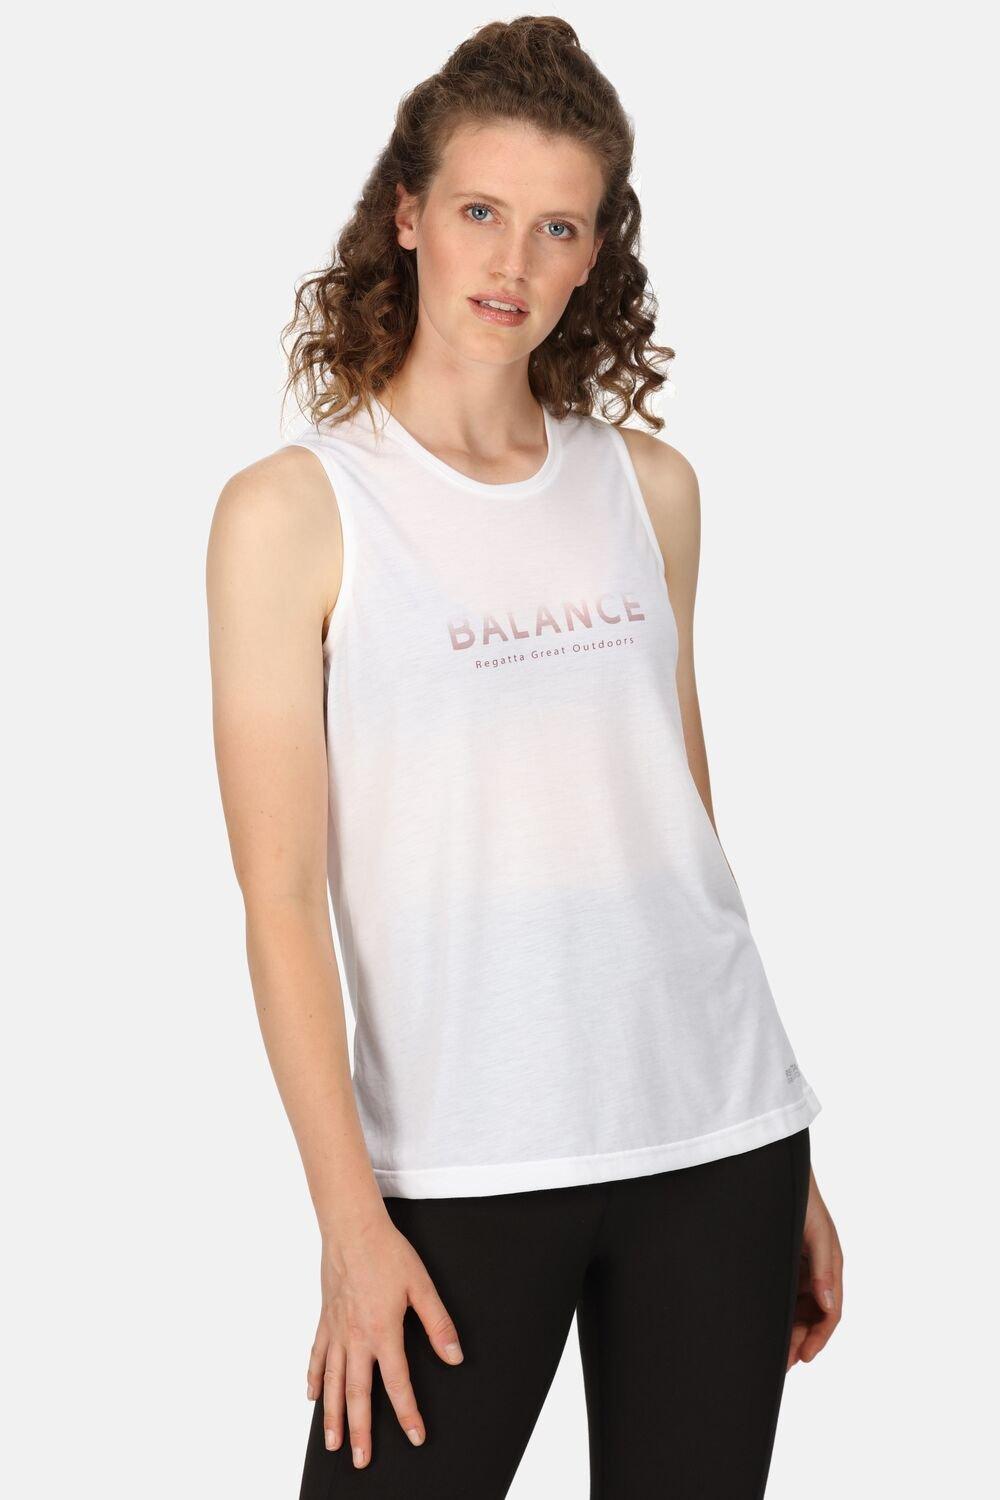 Жилет для фитнеса с графическим принтом Freedale II Regatta, белый женский топ без рукавов футболка 2020